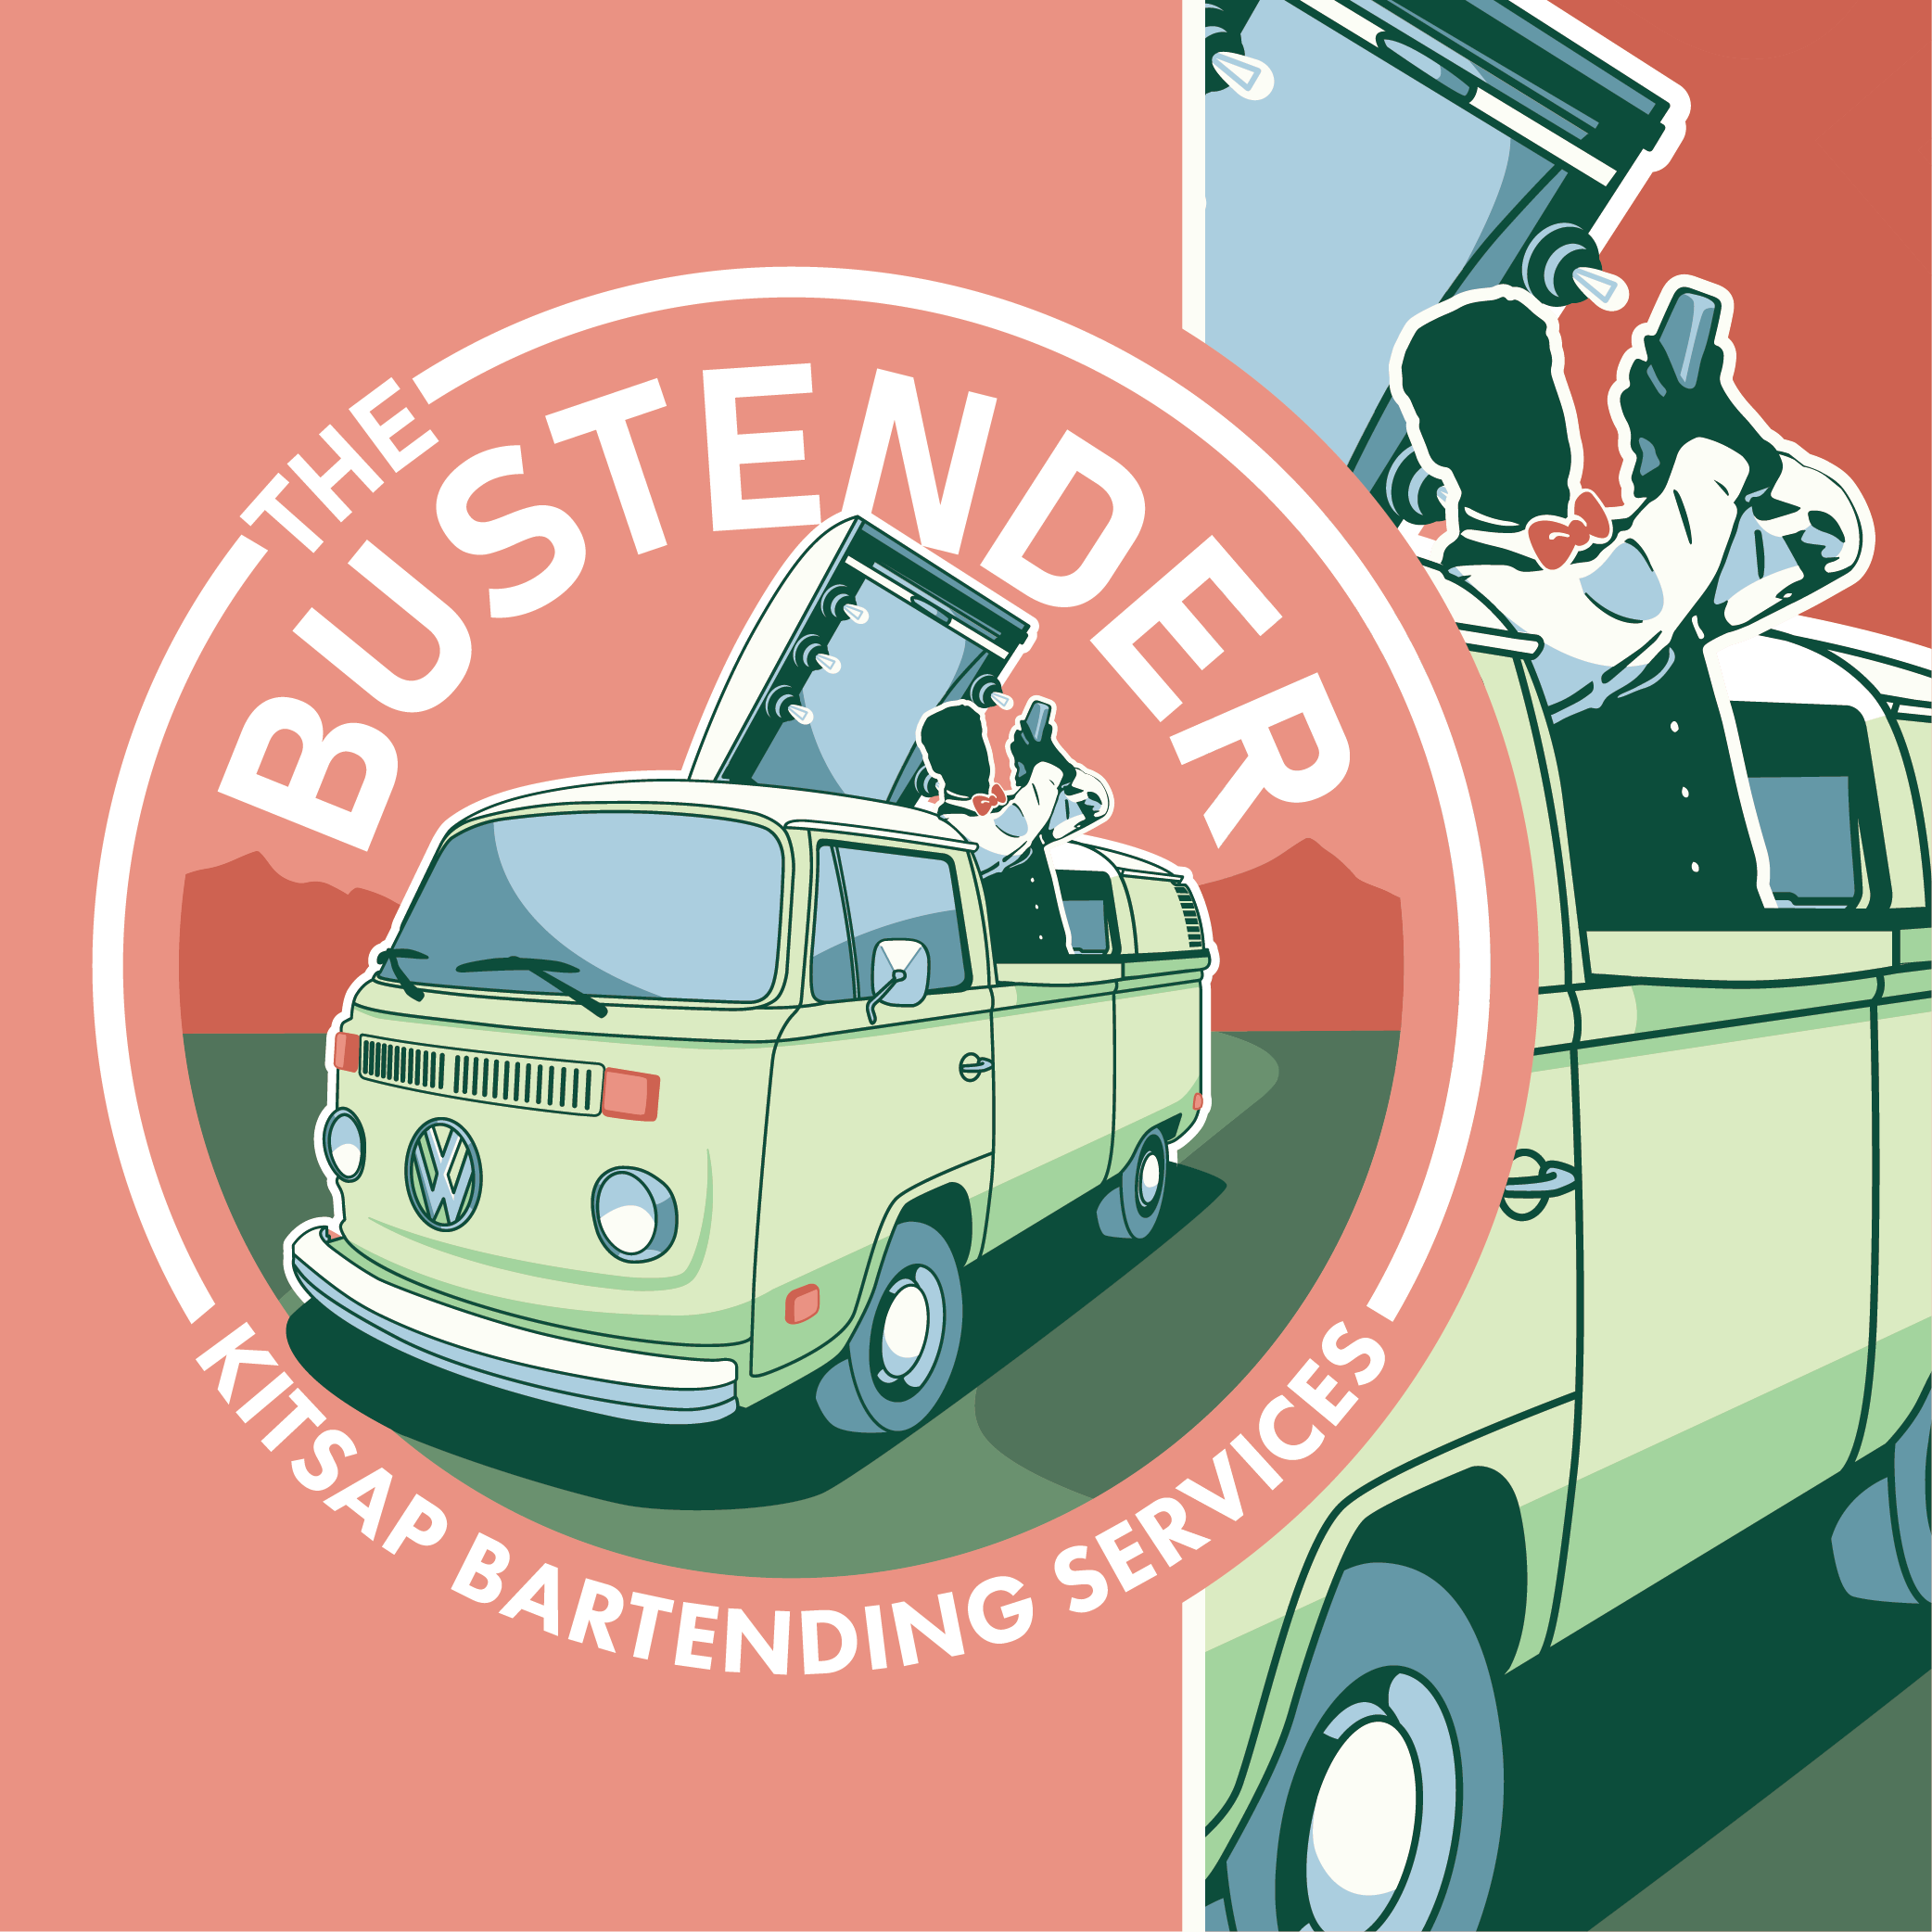 The Bustender: Kitsap Bartending Services